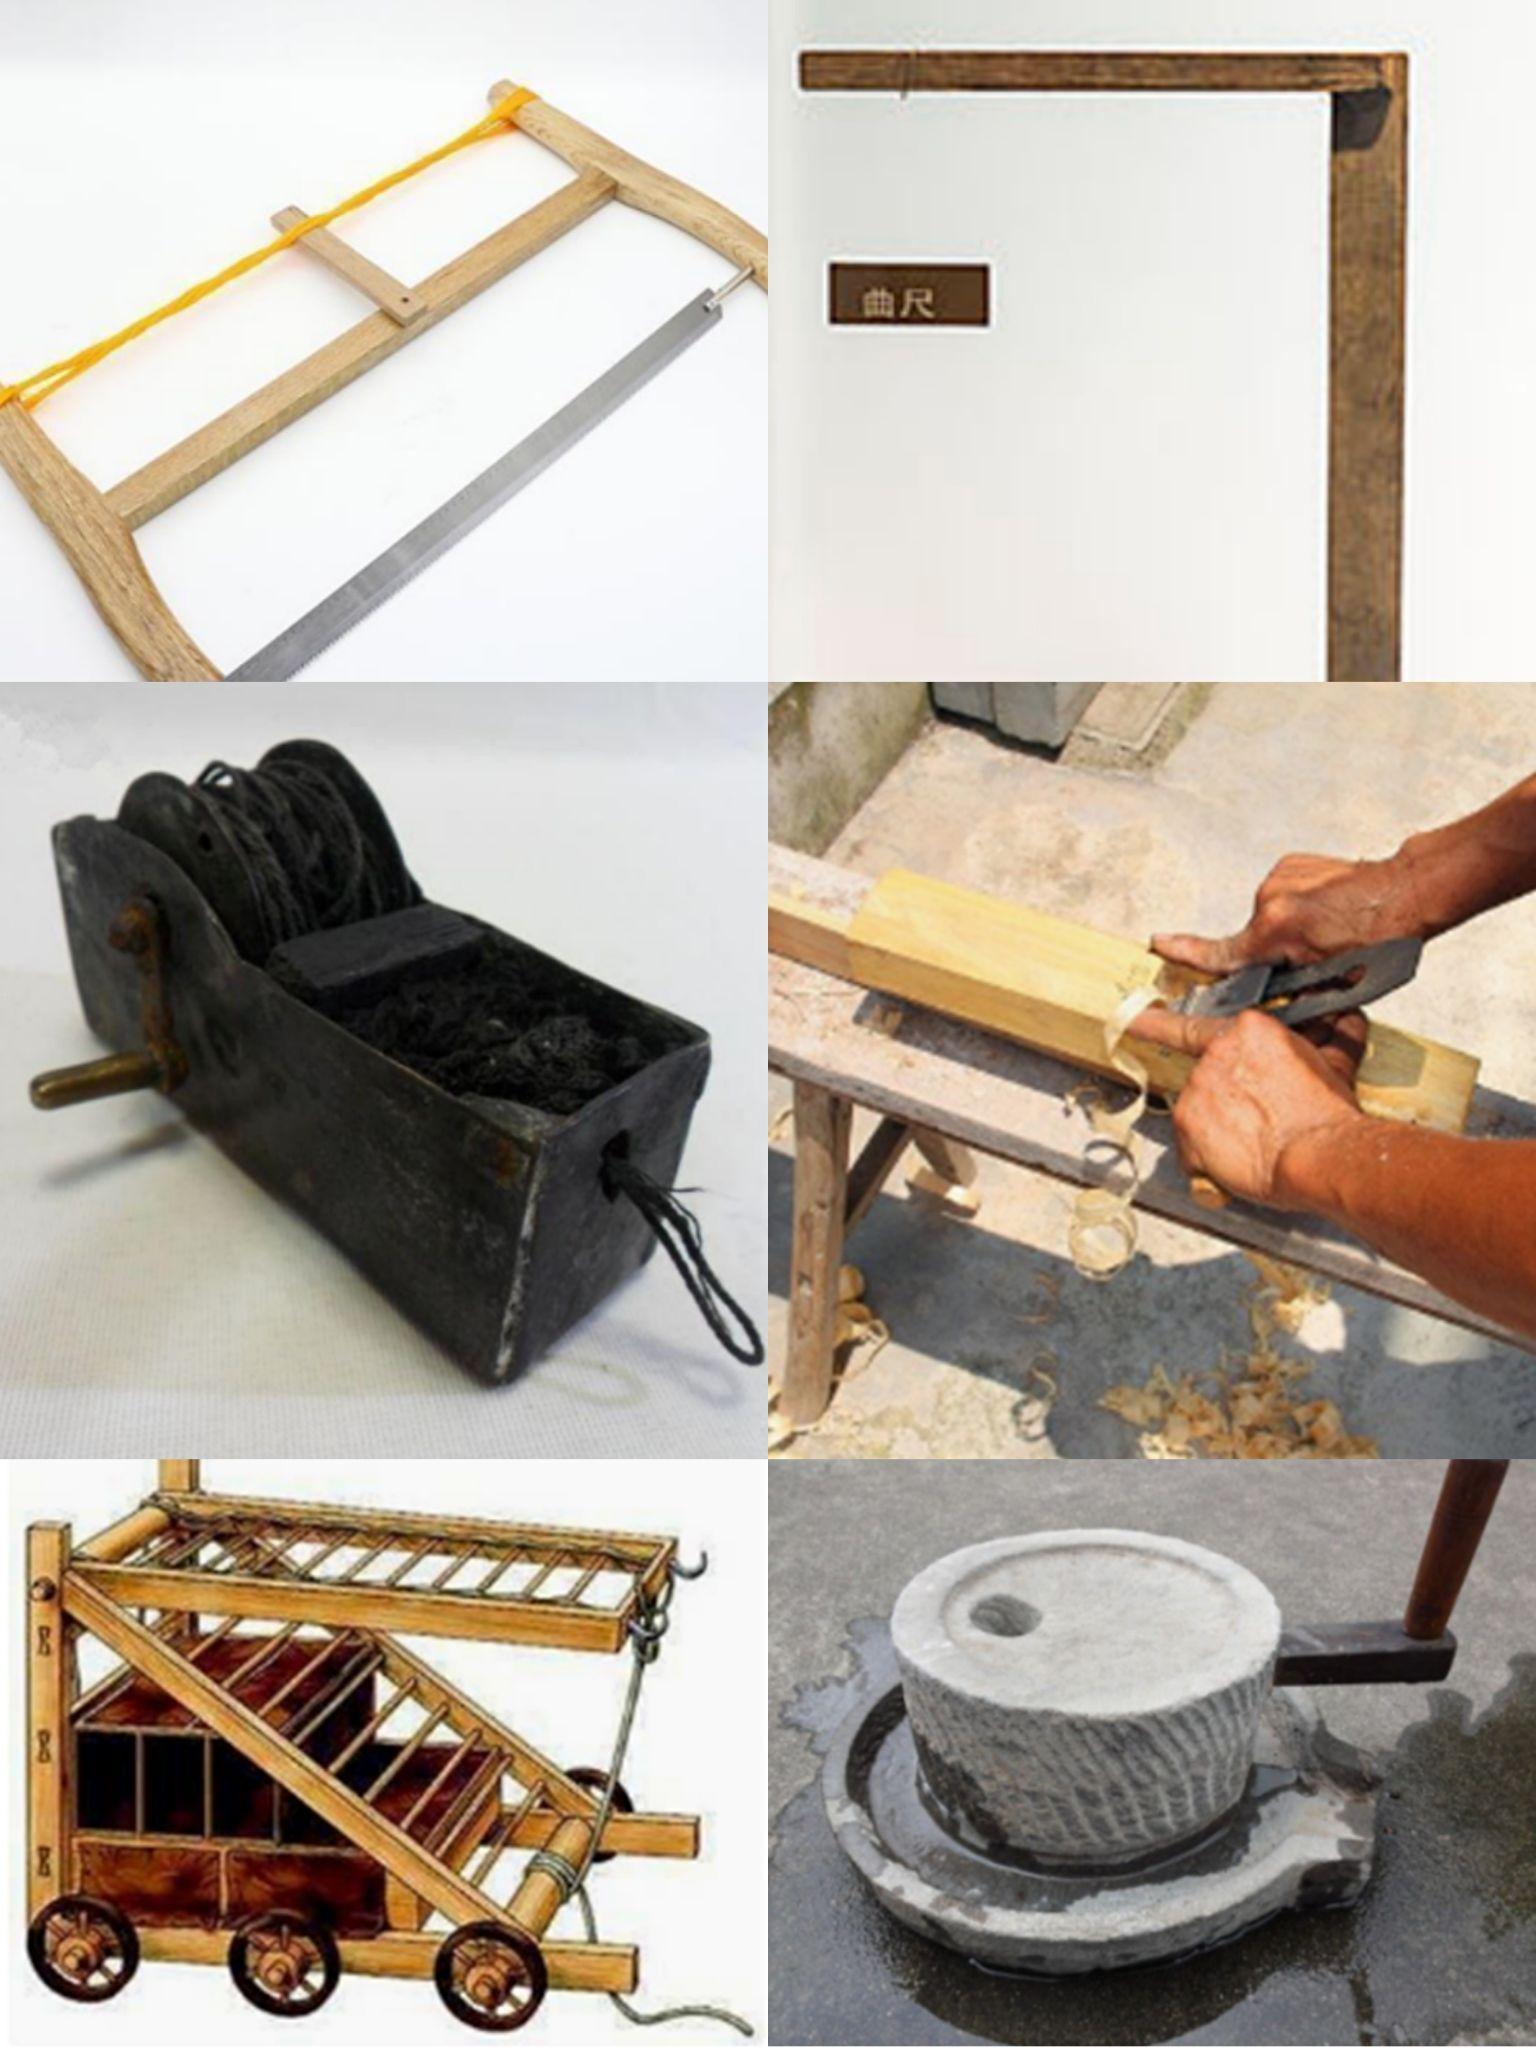 鲁班的发明:木工师傅们用的手工工具,如锯子,曲尺,划线用的墨斗,刨子